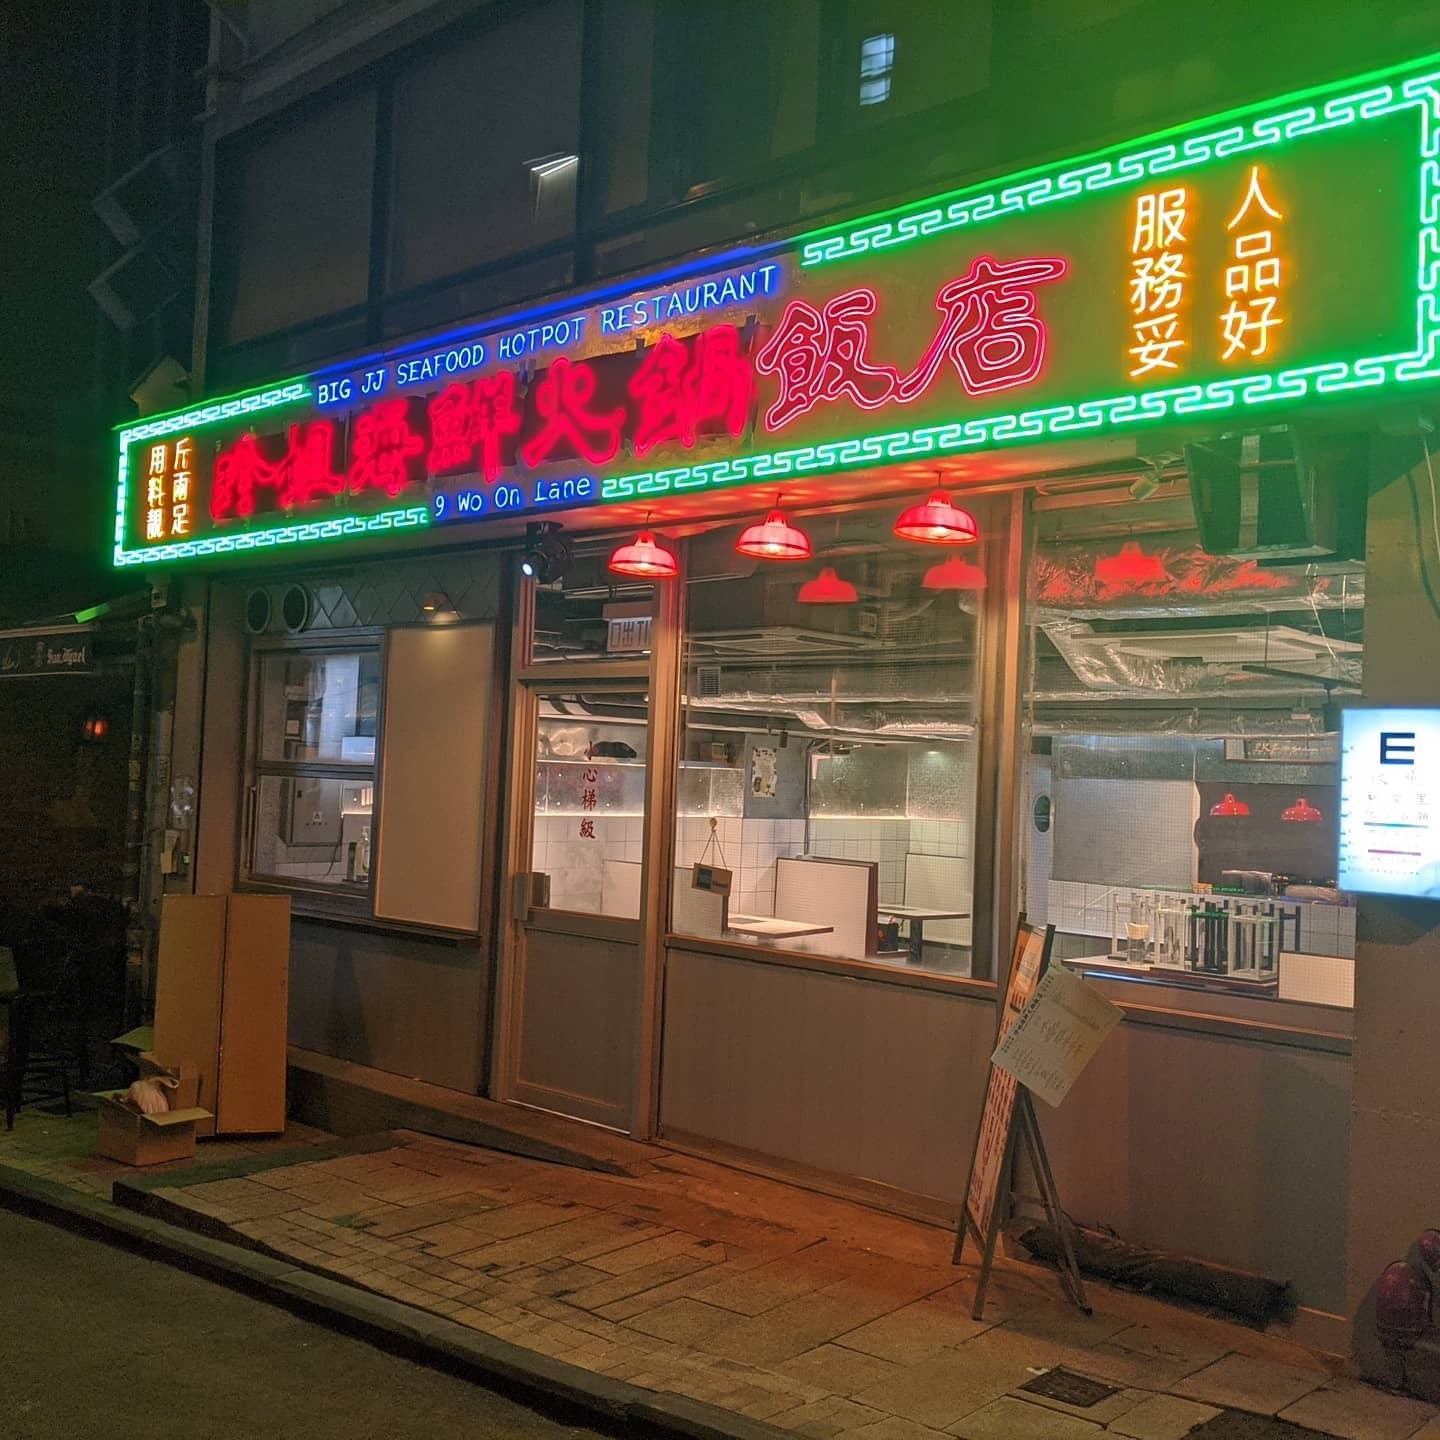 Big JJ Seafood Hotpot Restaurant | Restaurants in Lan Kwai Fong, Hong Kong